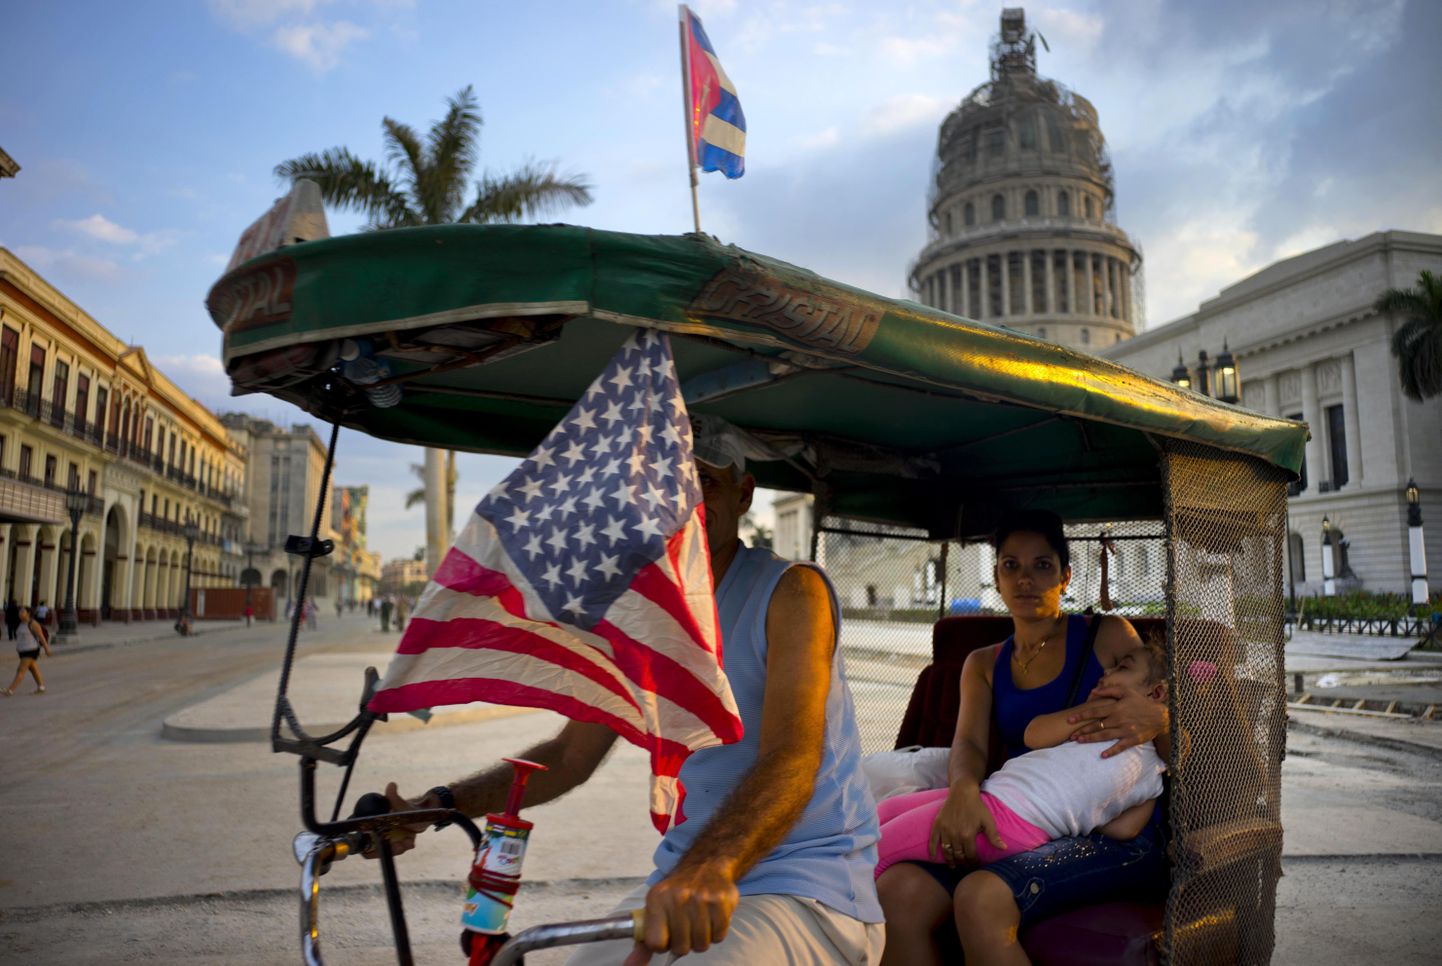 Kuuba ja USA lippudega dekoreeritud velotakso Havanna kesklinnas.